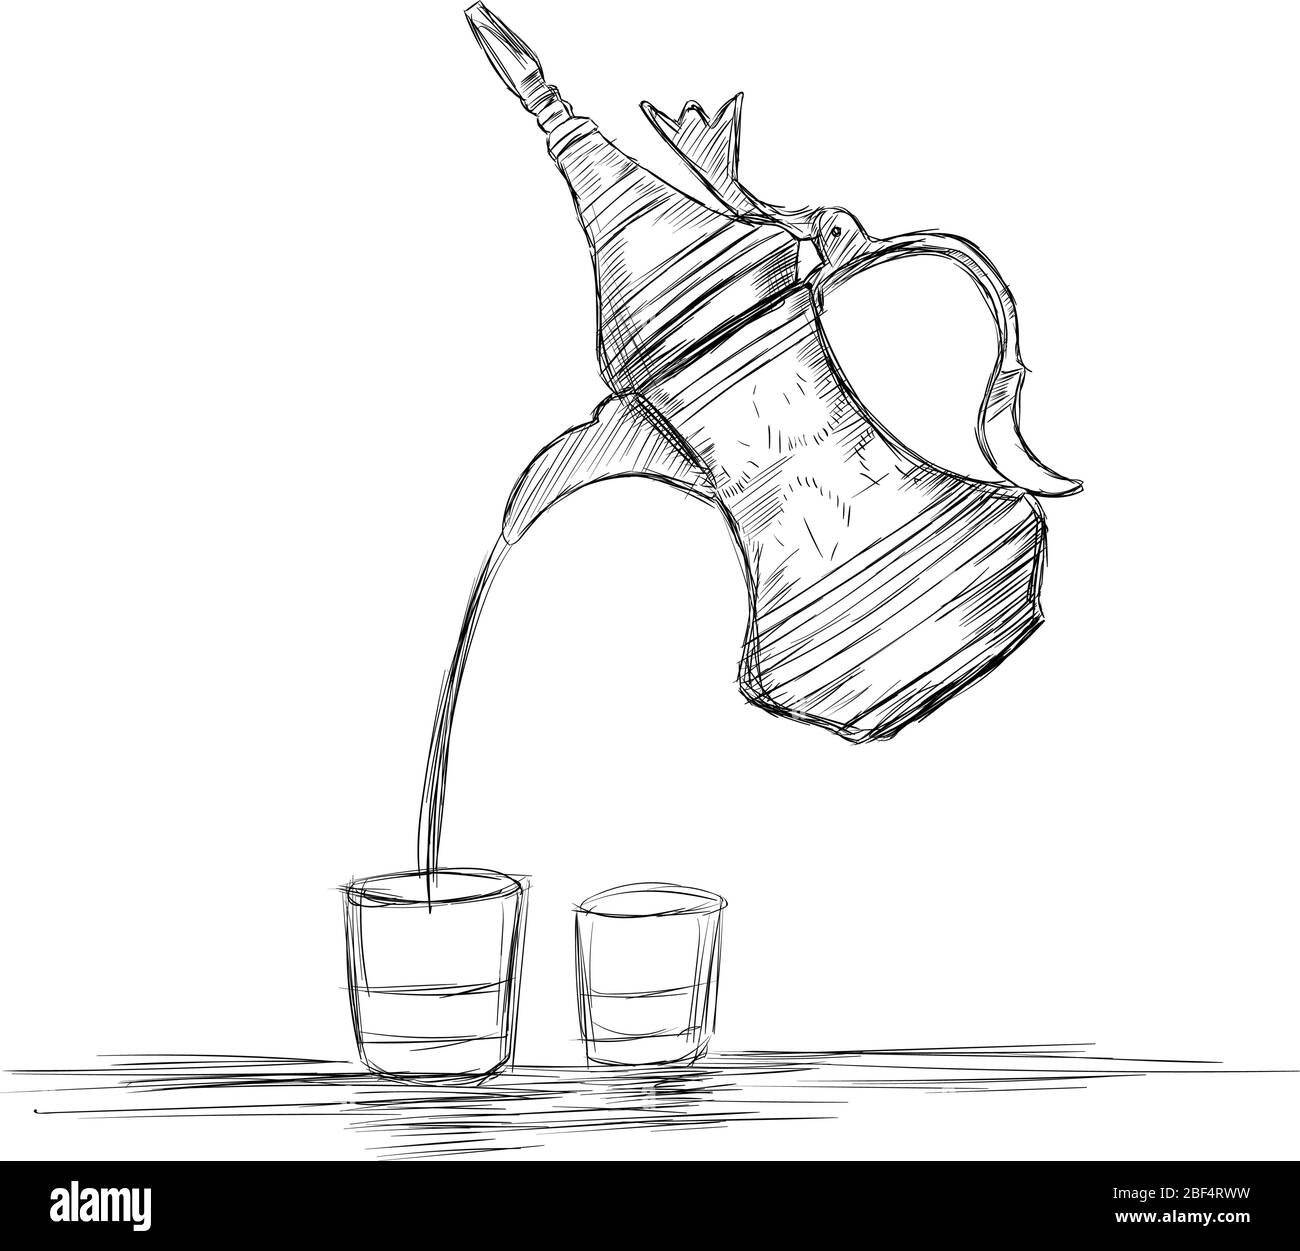 Kultur des Nahen Ostens Dallah - Vektor Illustration der arabischen Kaffeekanne und Tassen Stock Vektor